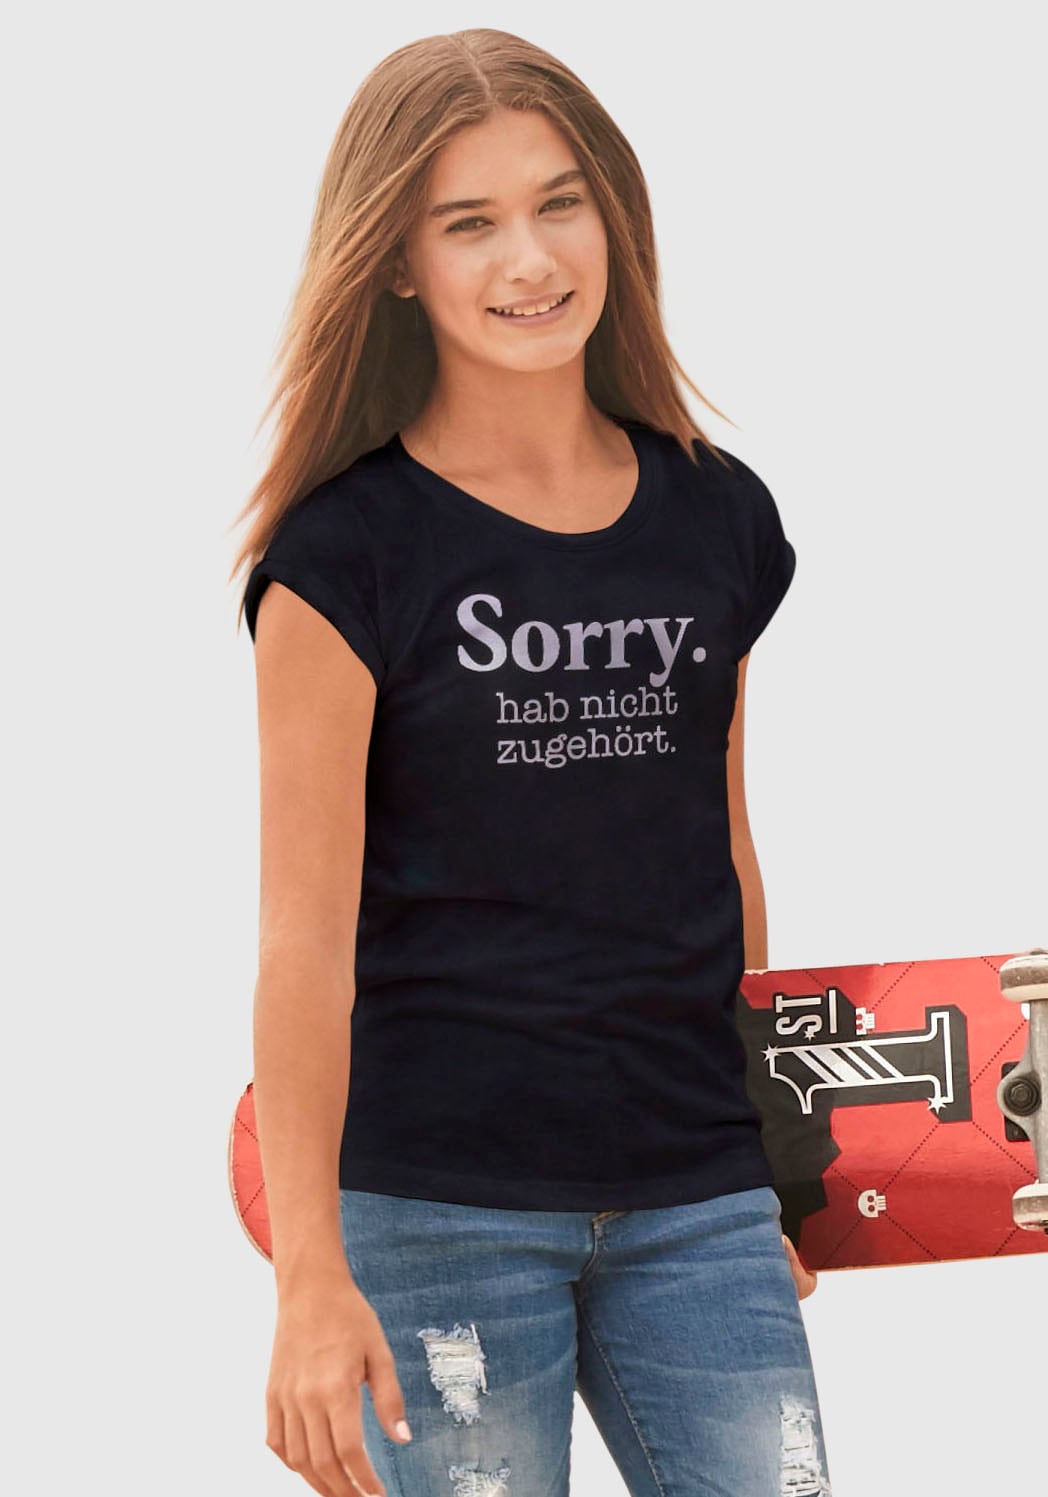 »Sorry. T-Shirt | KIDSWORLD ✵ in legerer entdecken nicht weiter Jelmoli-Versand zugehört.«, günstig hab Form